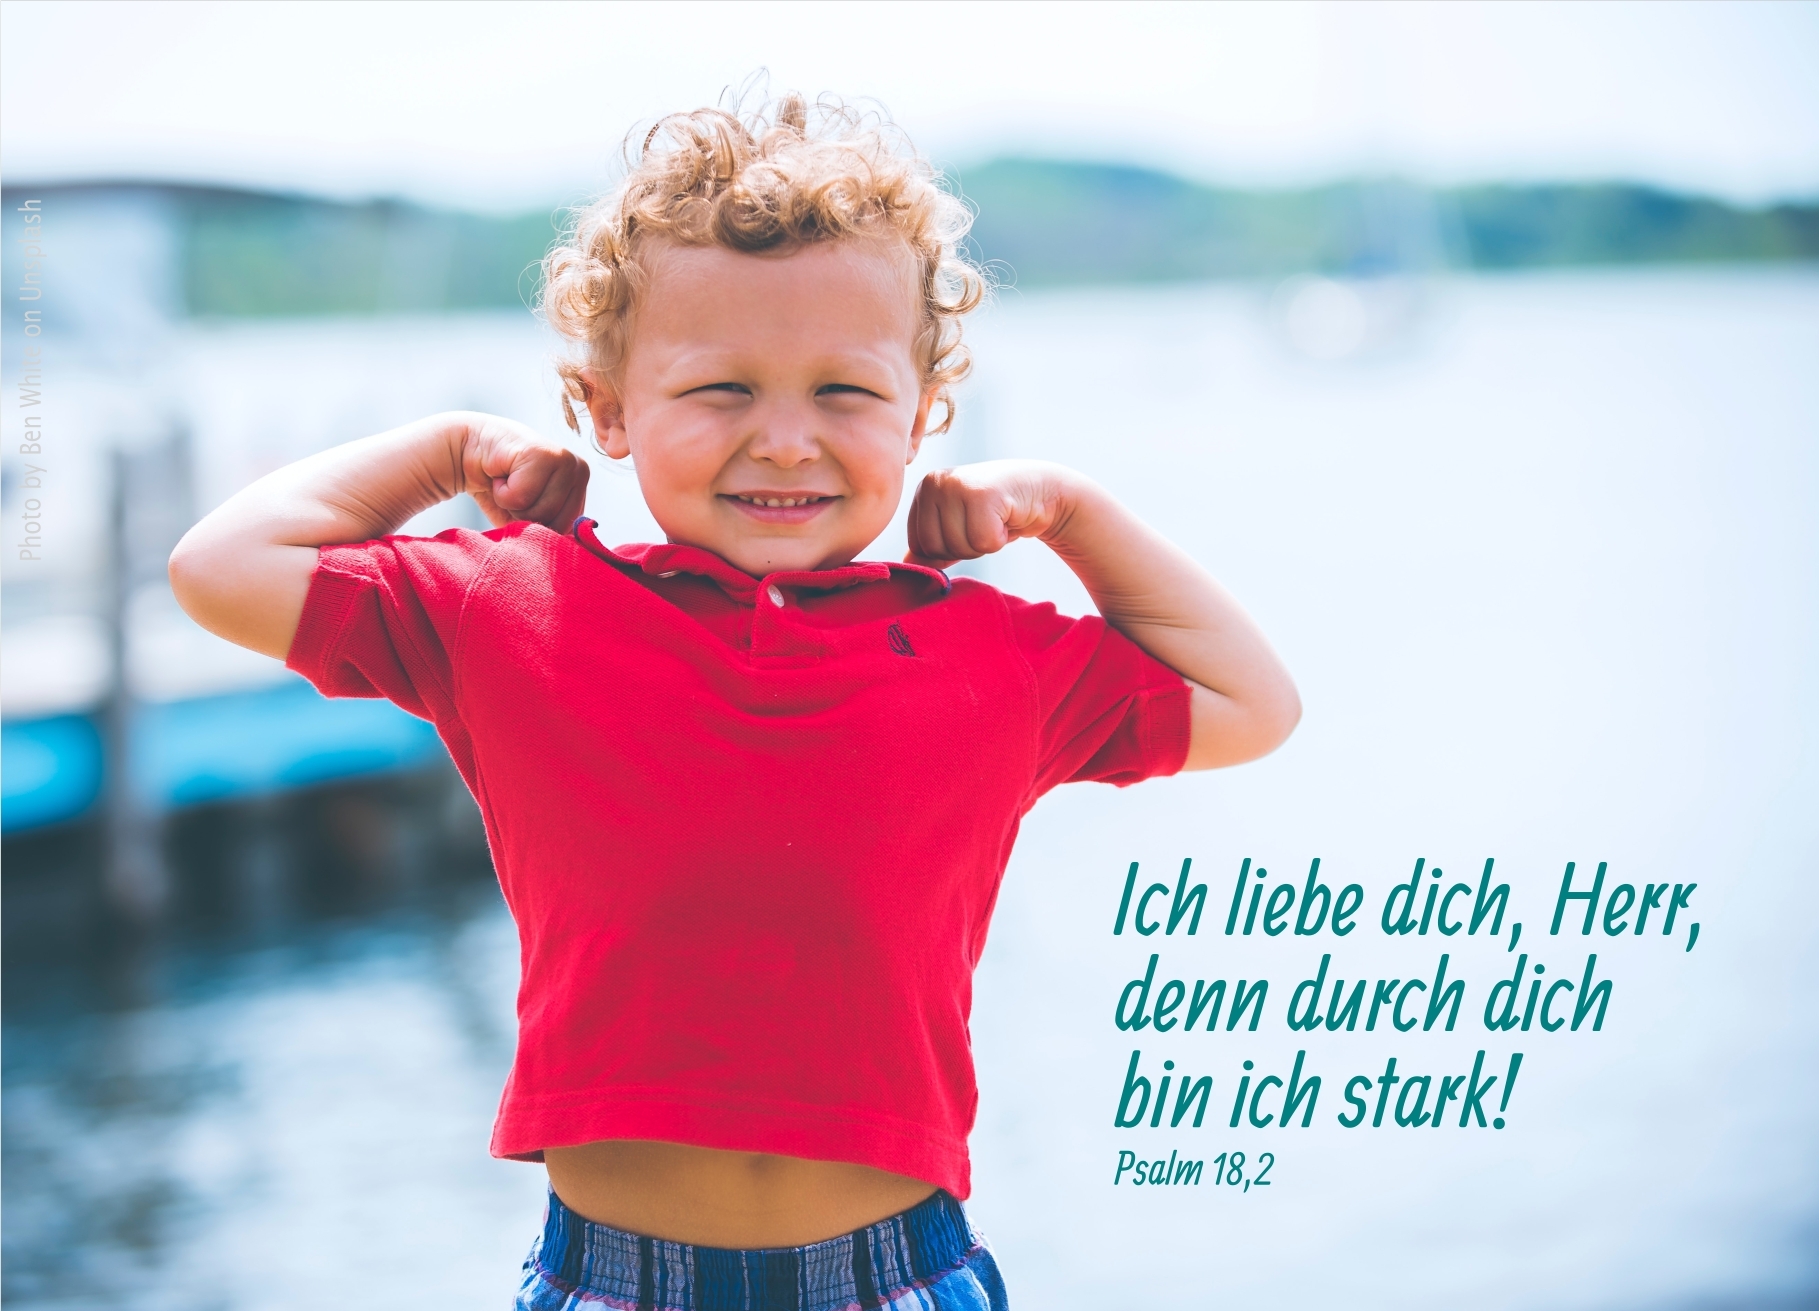 alt="junge_im_roten_tshirt_erwartet_bibelhoerbuch_nicht_sklaven_sondern_kinder"